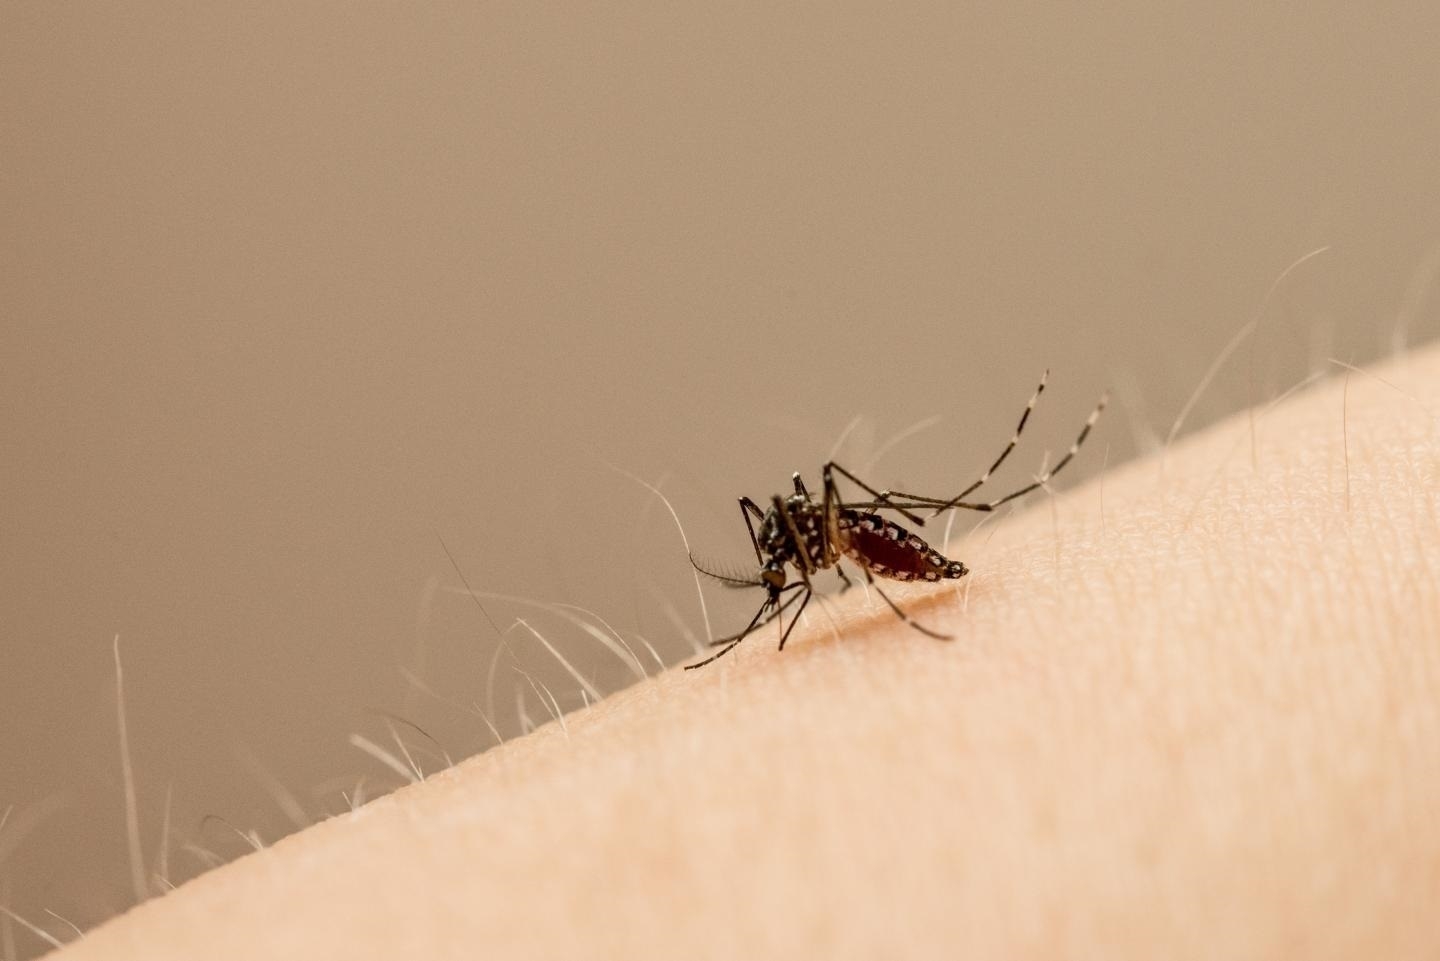 Un mosquito succiona sangre en el brazo de una persona.